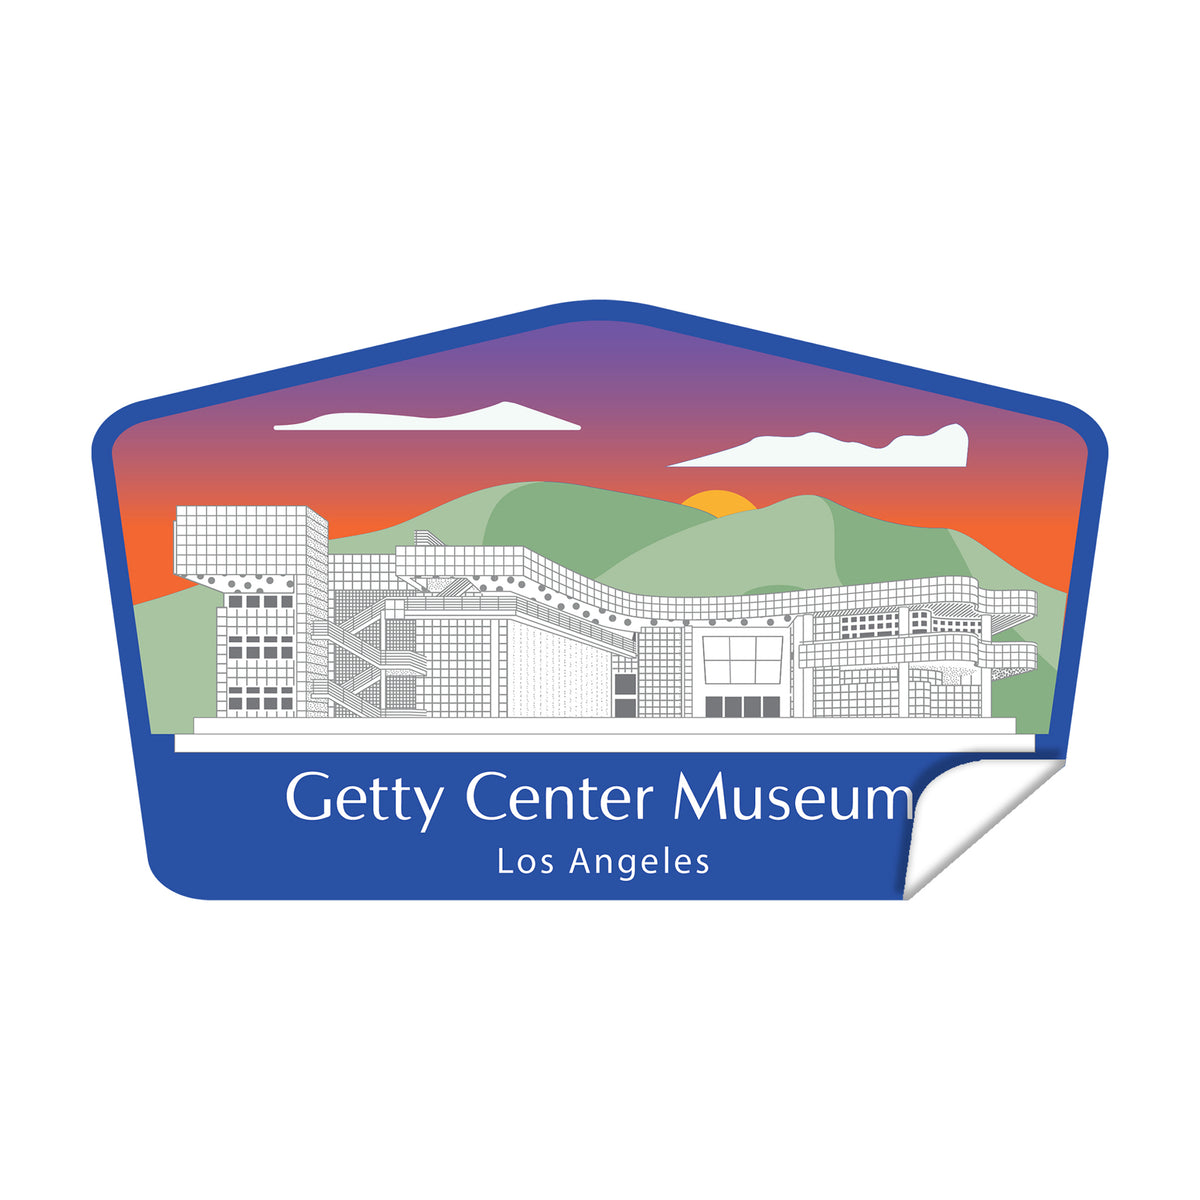 Getty Center Museum Die Cut Sticker